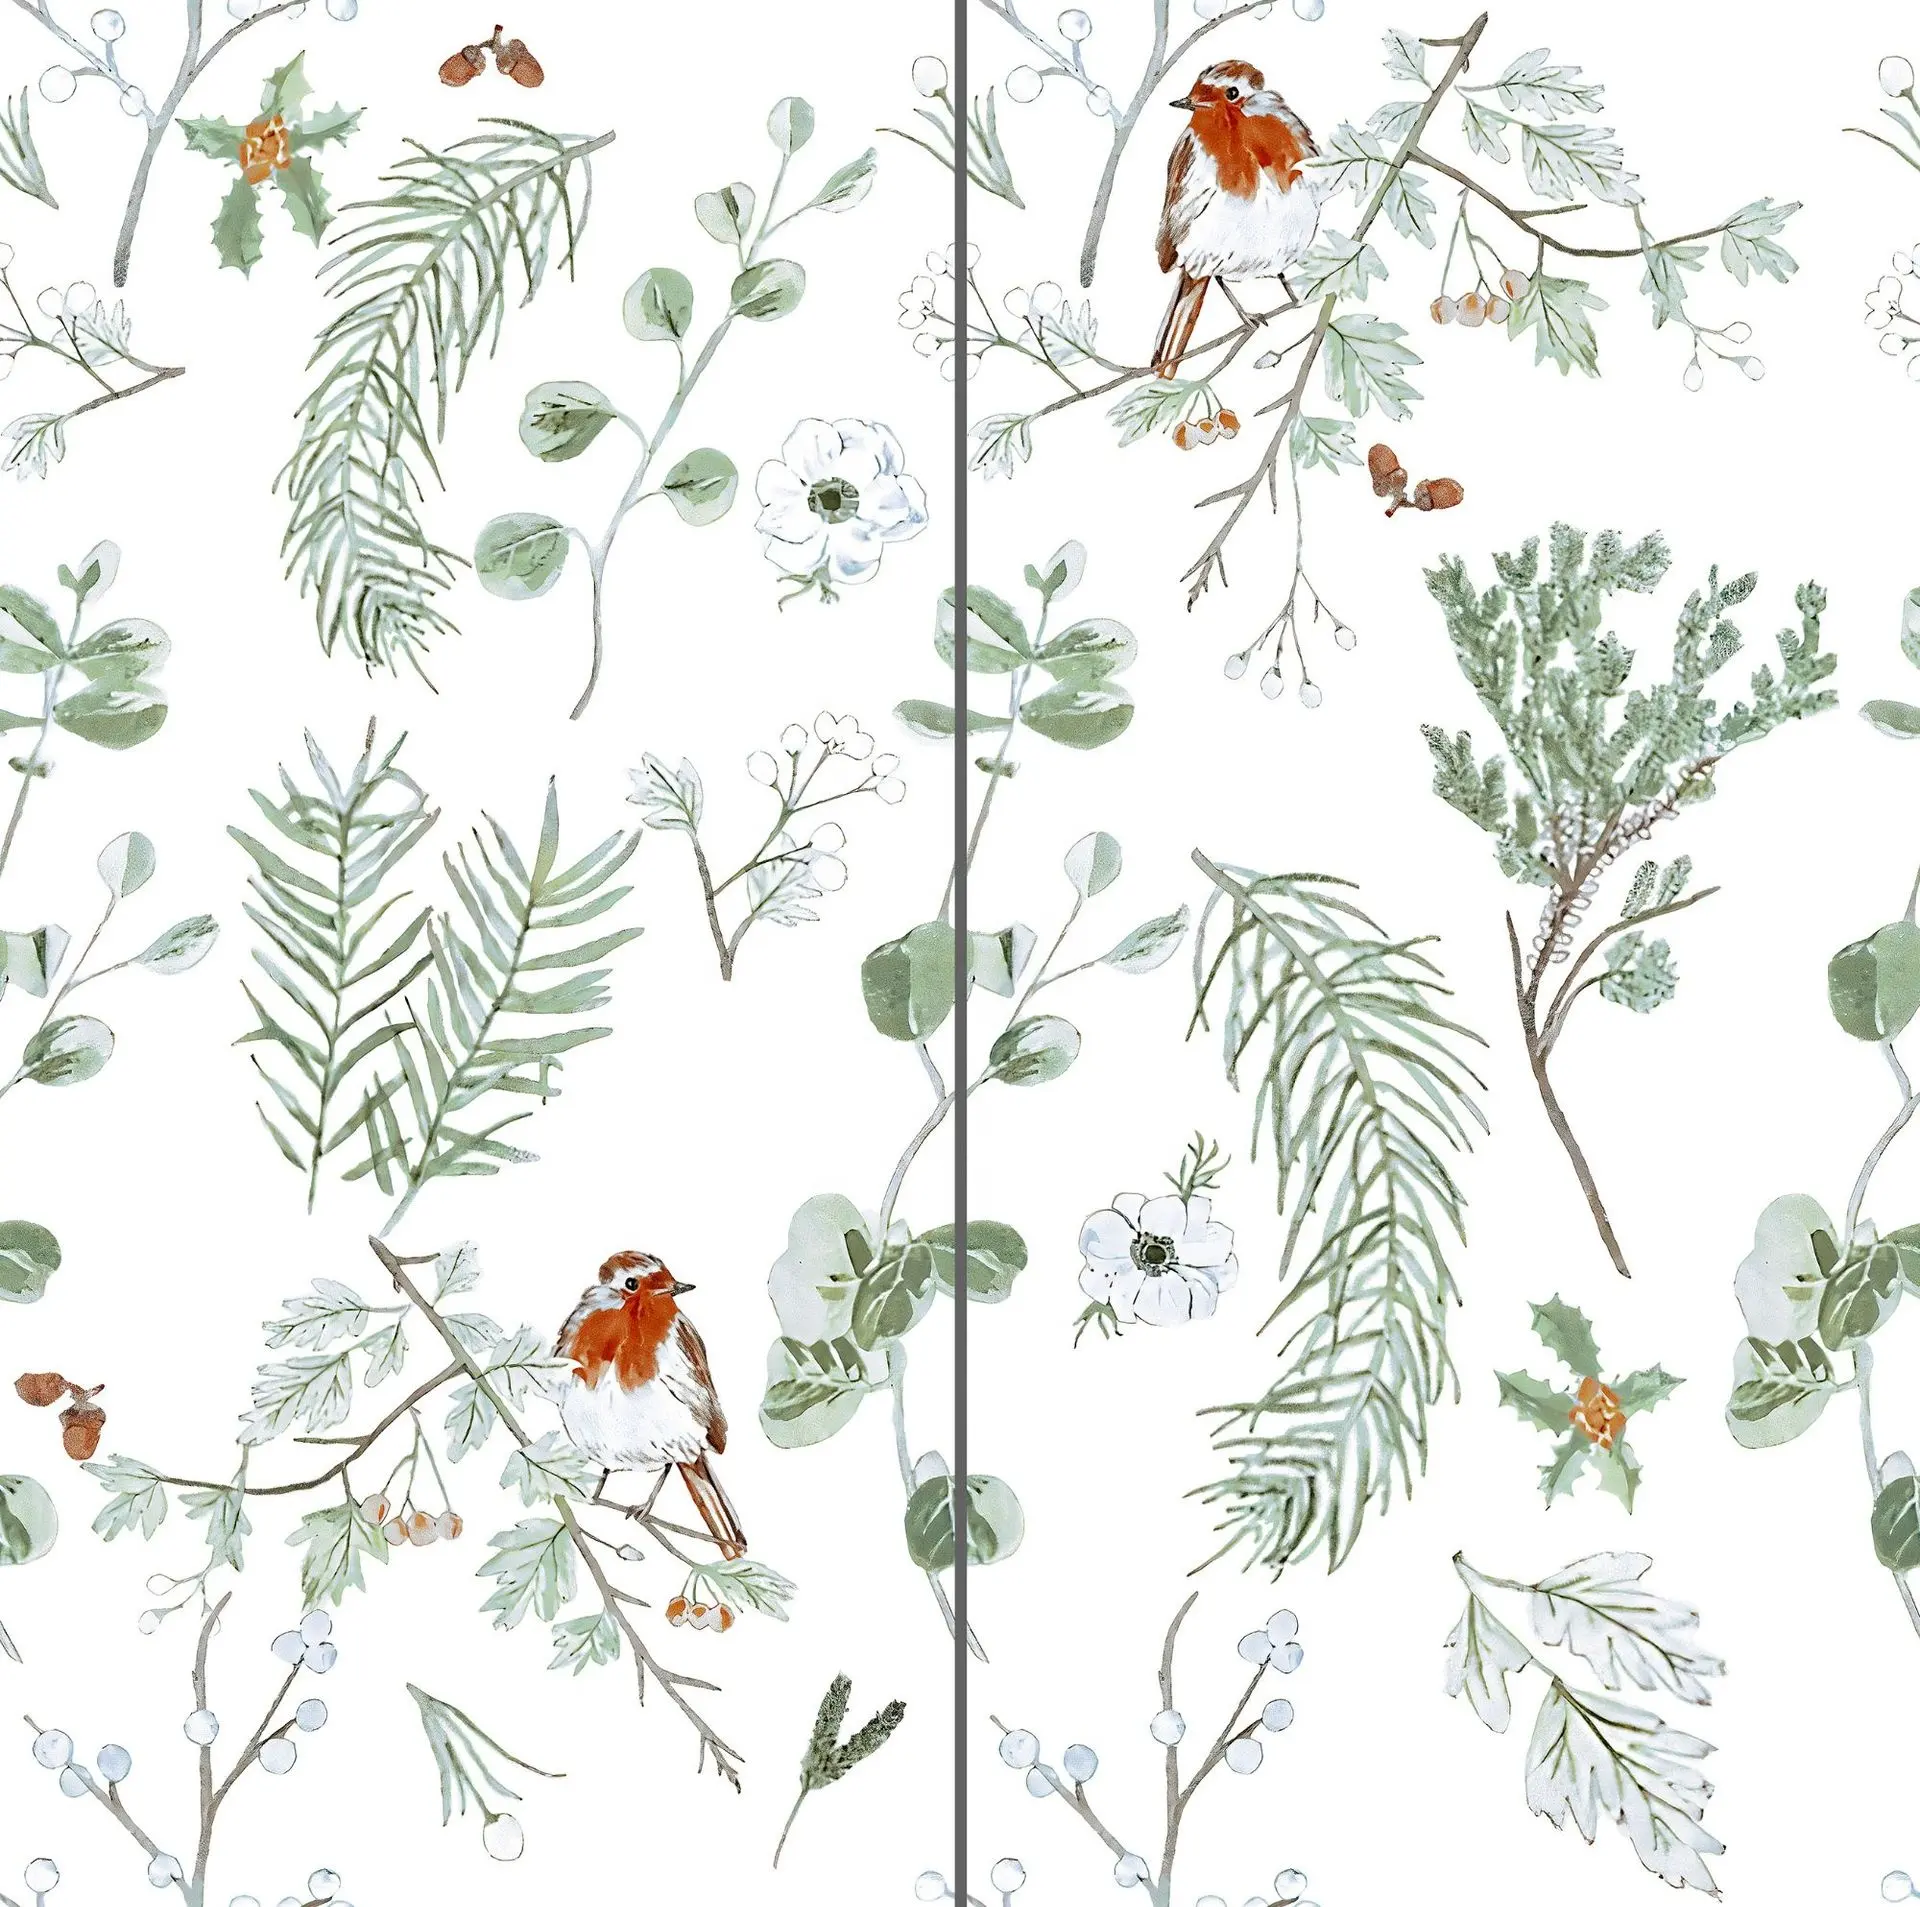 Oiseau de campagne américaine unique et imprimé floral font la beauté de la salle de bain 300*600mm carreaux de céramique émaillés pour mur intérieur